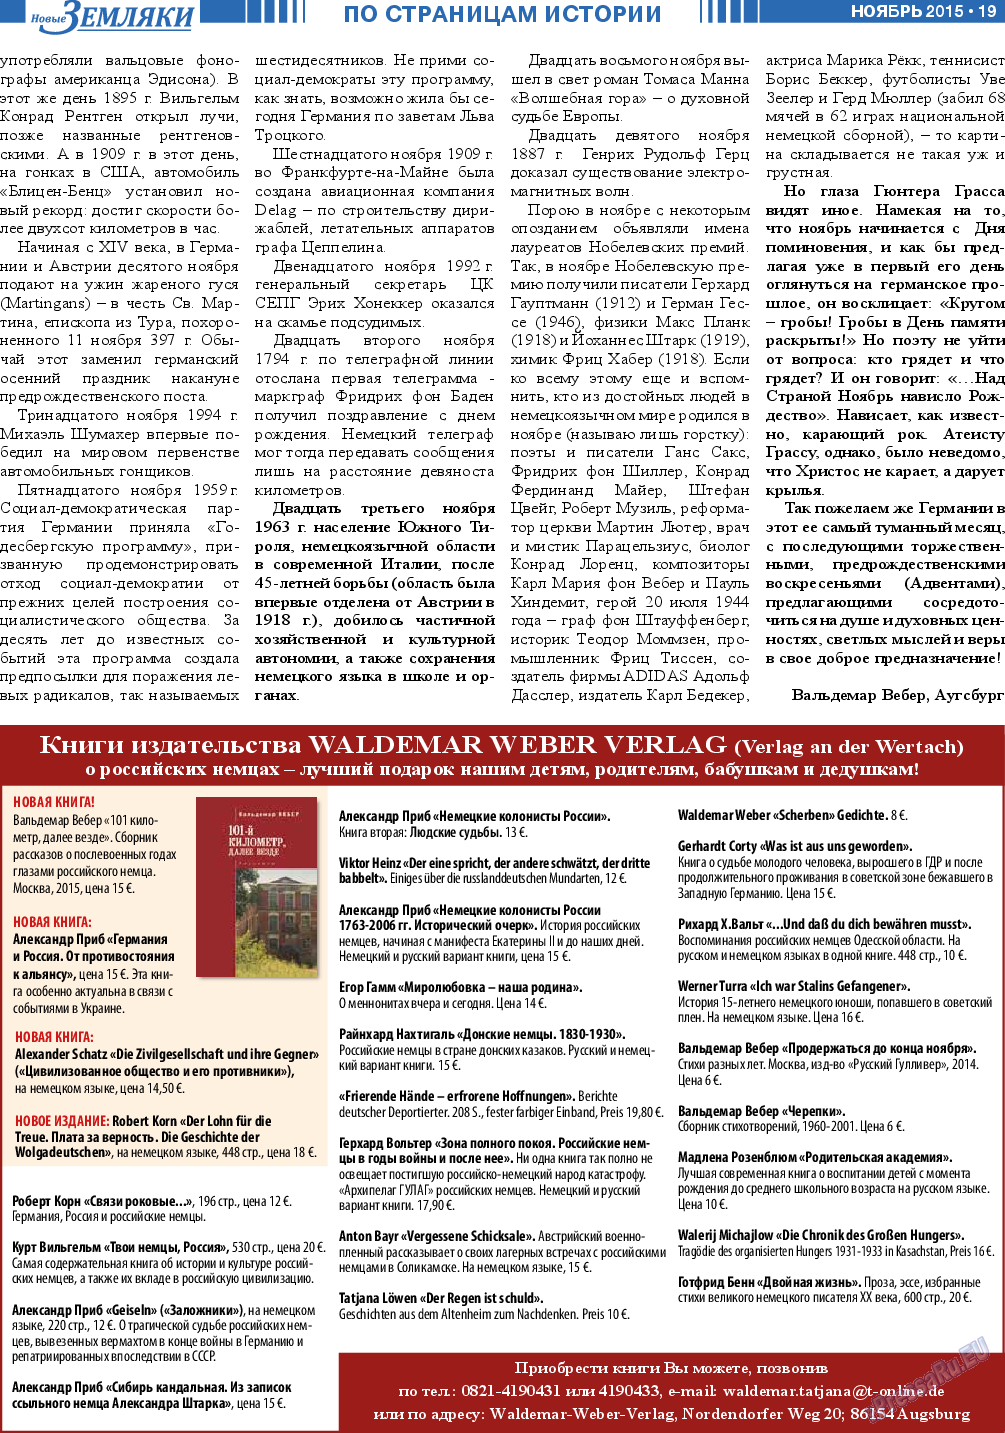 Новые Земляки, газета. 2015 №11 стр.19